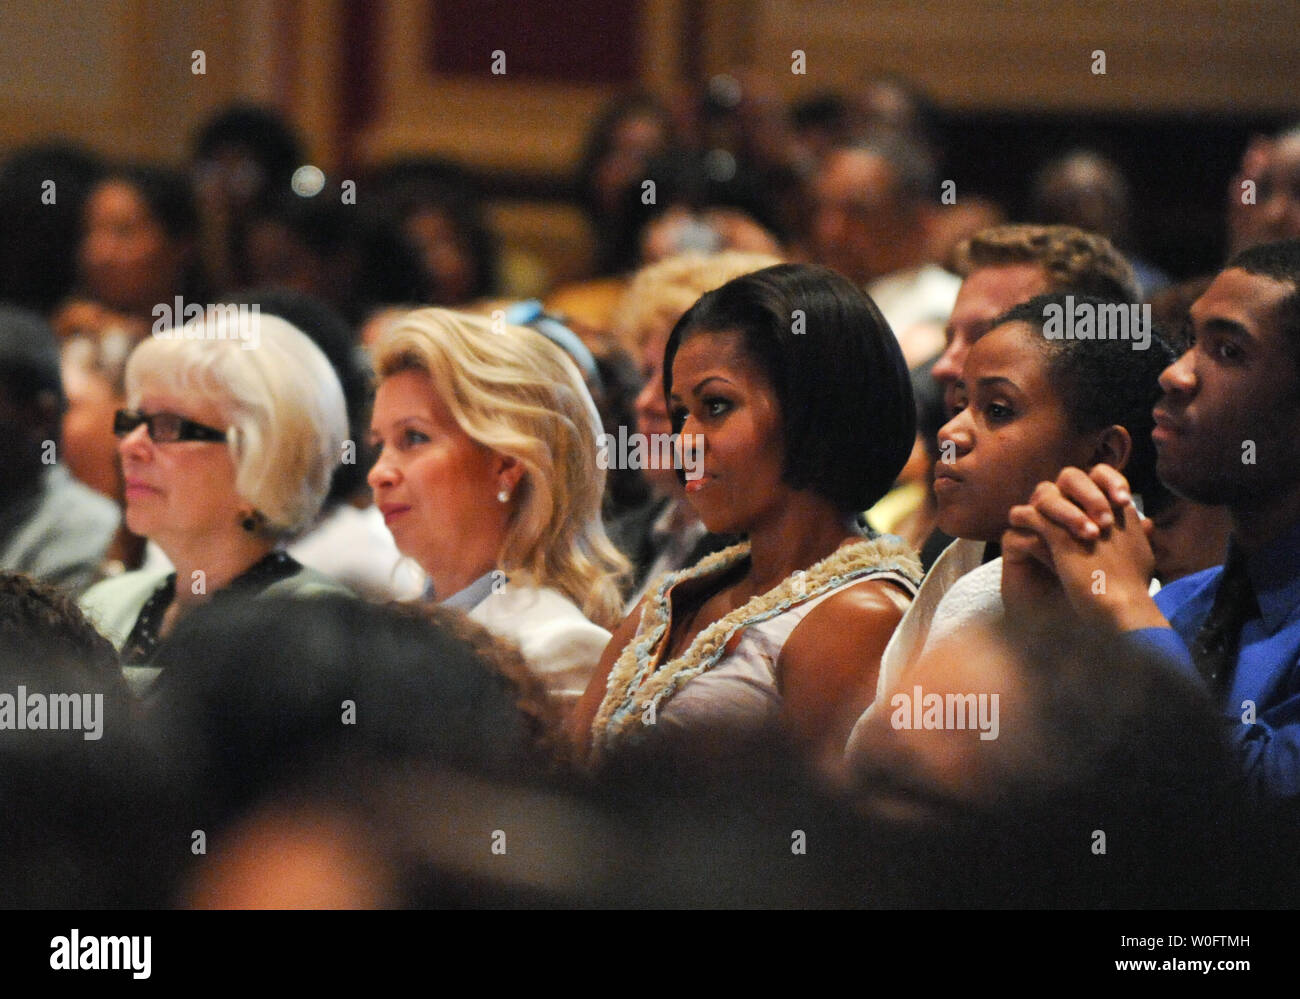 First Lady Michelle Obama (C) und First Lady von Russland Svetlana Medvedeva (2 L) eine Musik und Tanz Performance an der Duke Ellington Schule der Künste in Washington am 24. Juni 2010 teilnehmen. UPI/Alexis C Glenn Stockfoto